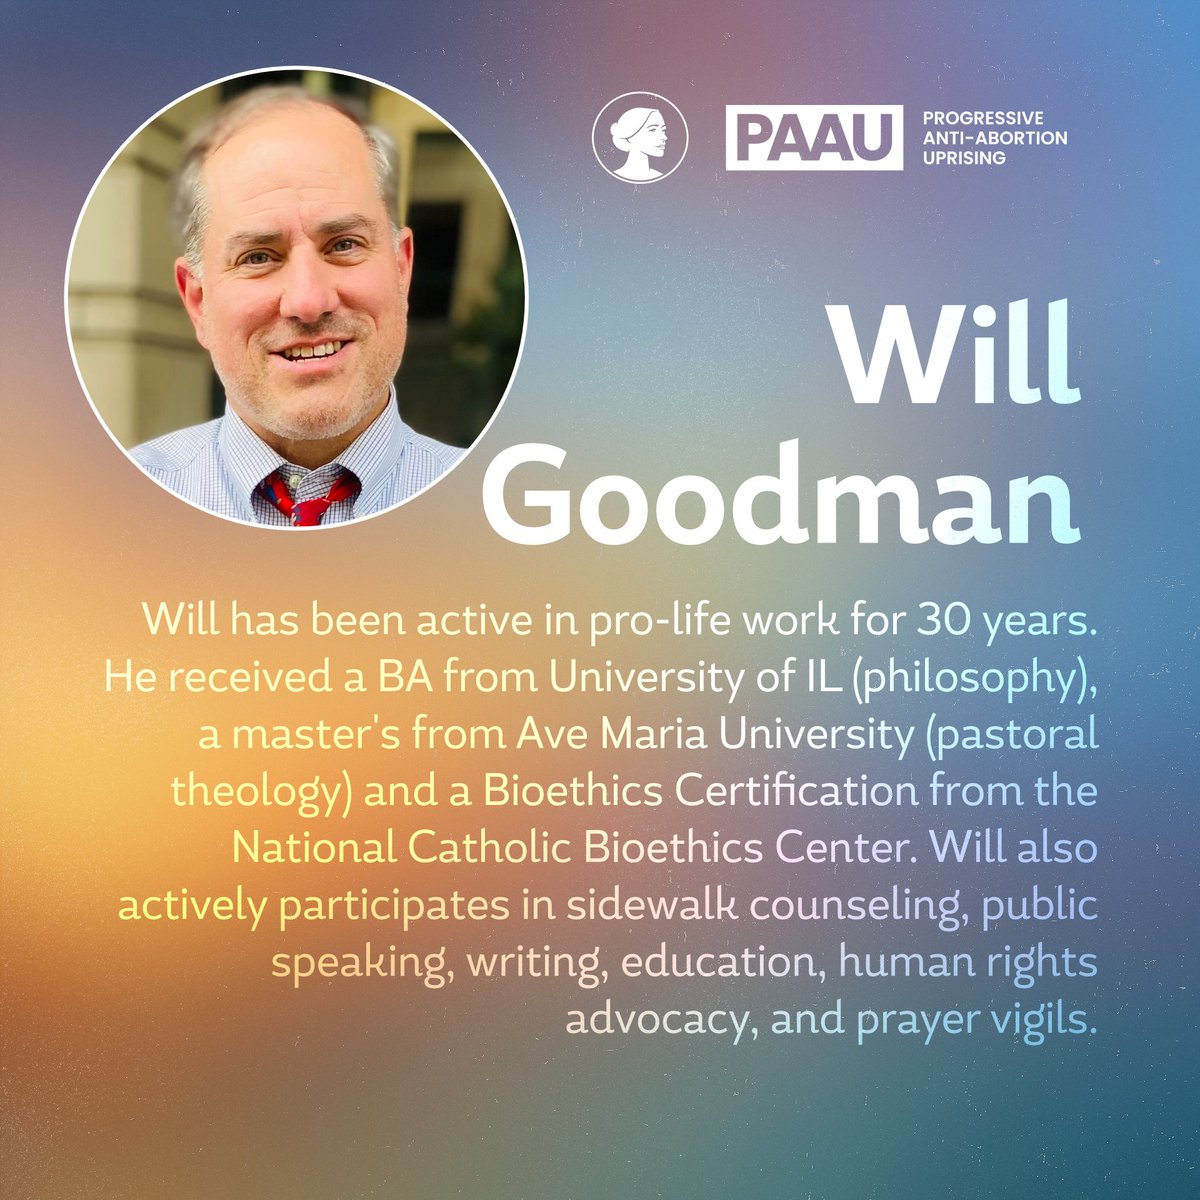 4. Will Goodman